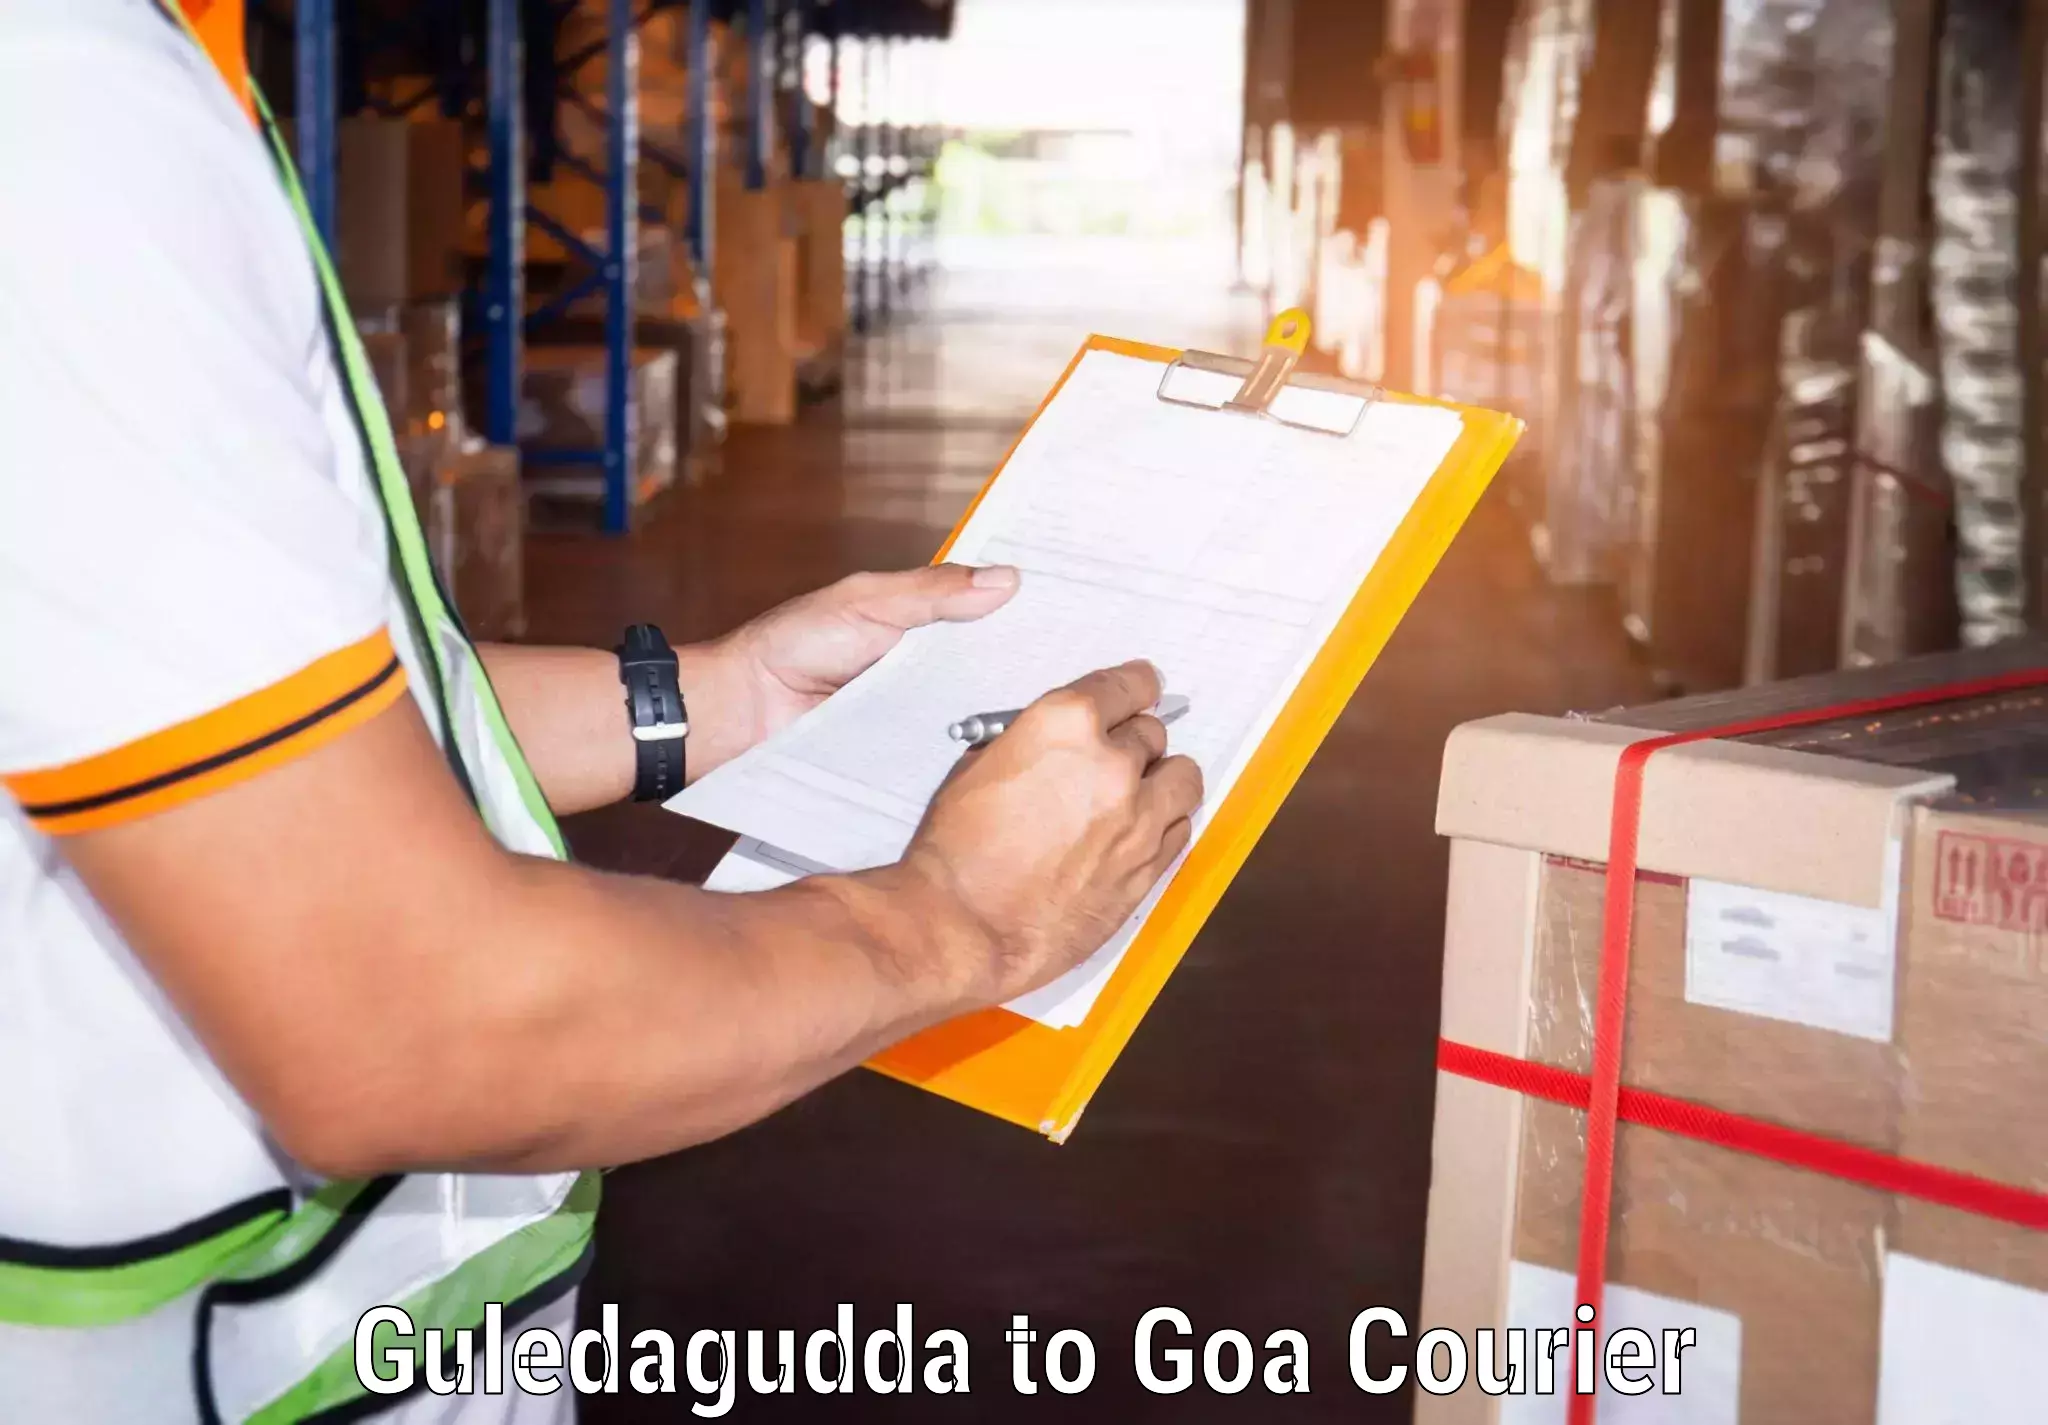 Logistics service provider Guledagudda to Ponda